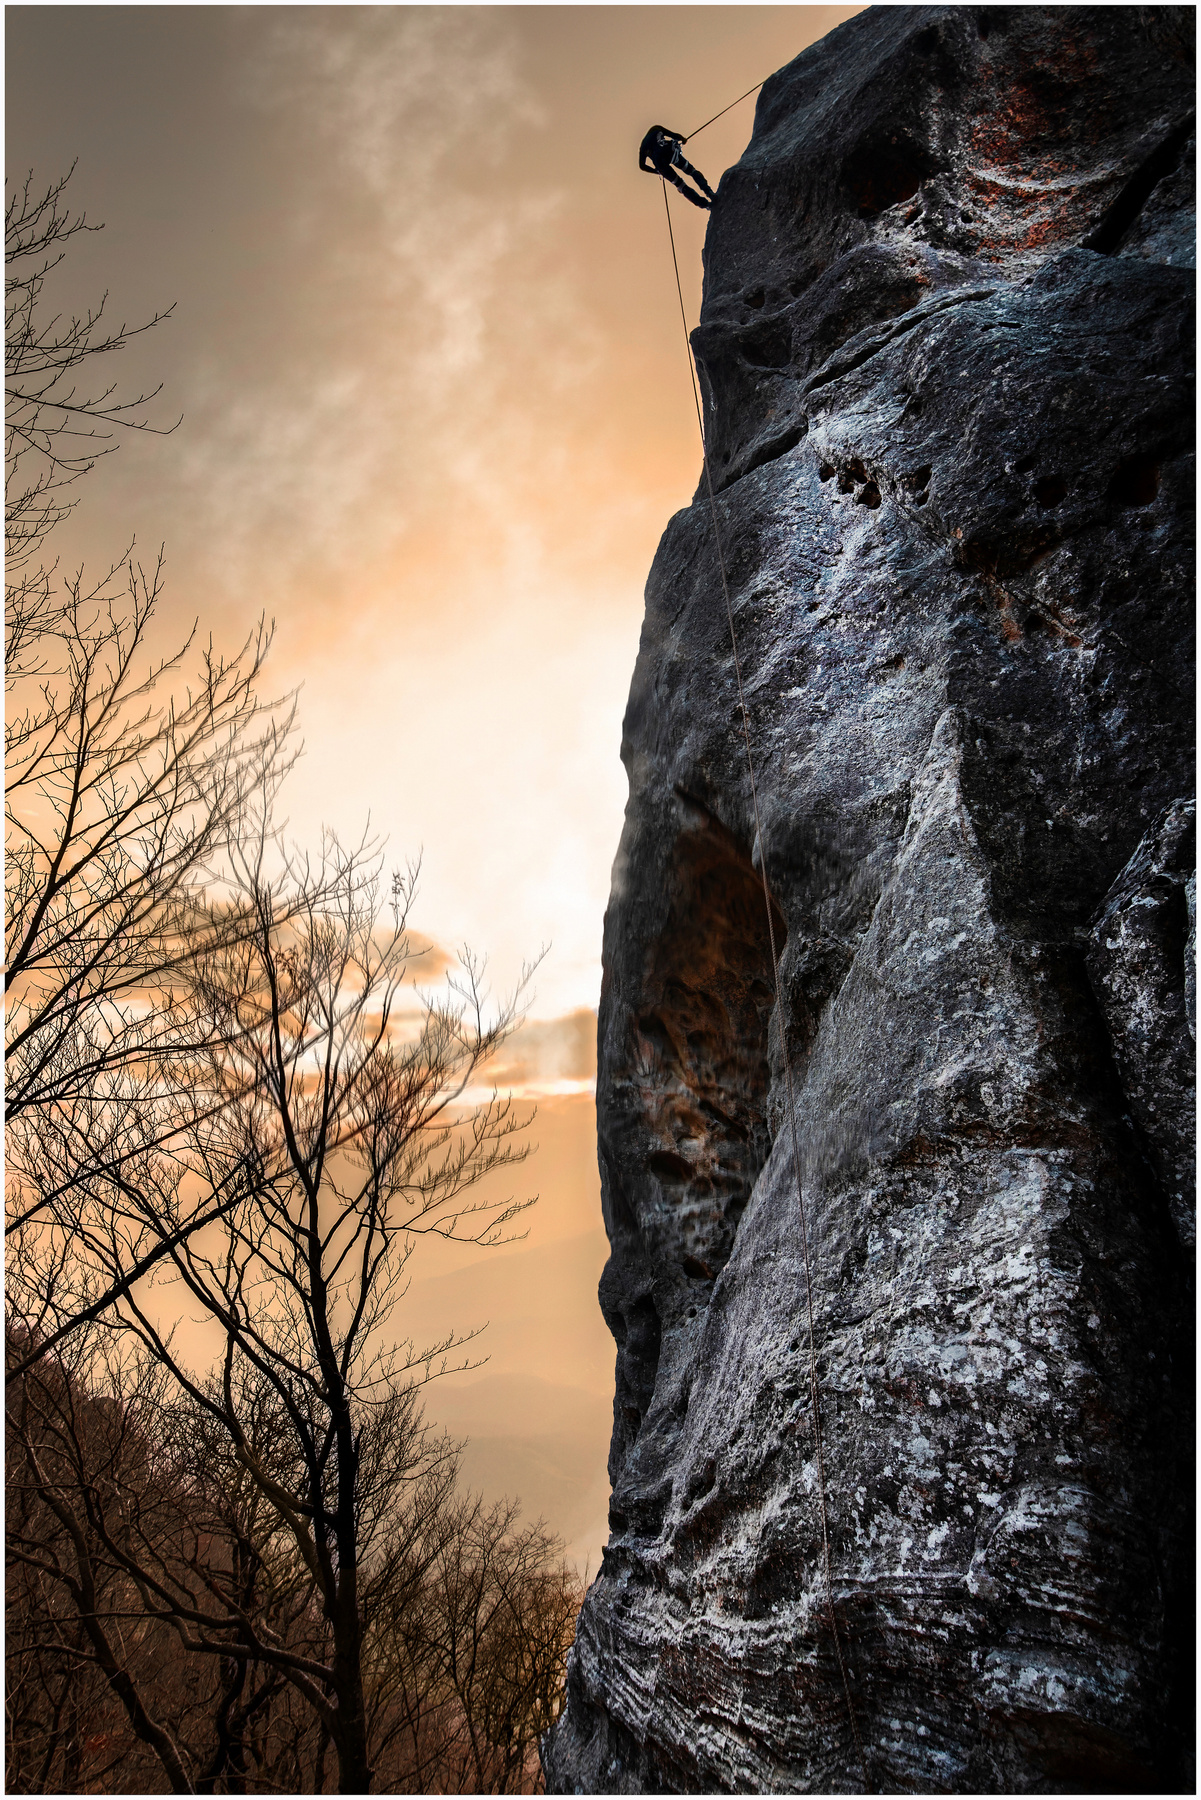 Человек и скала Горы скалы вечер закат скалолаз стена спуск веревка спорт.экстрим